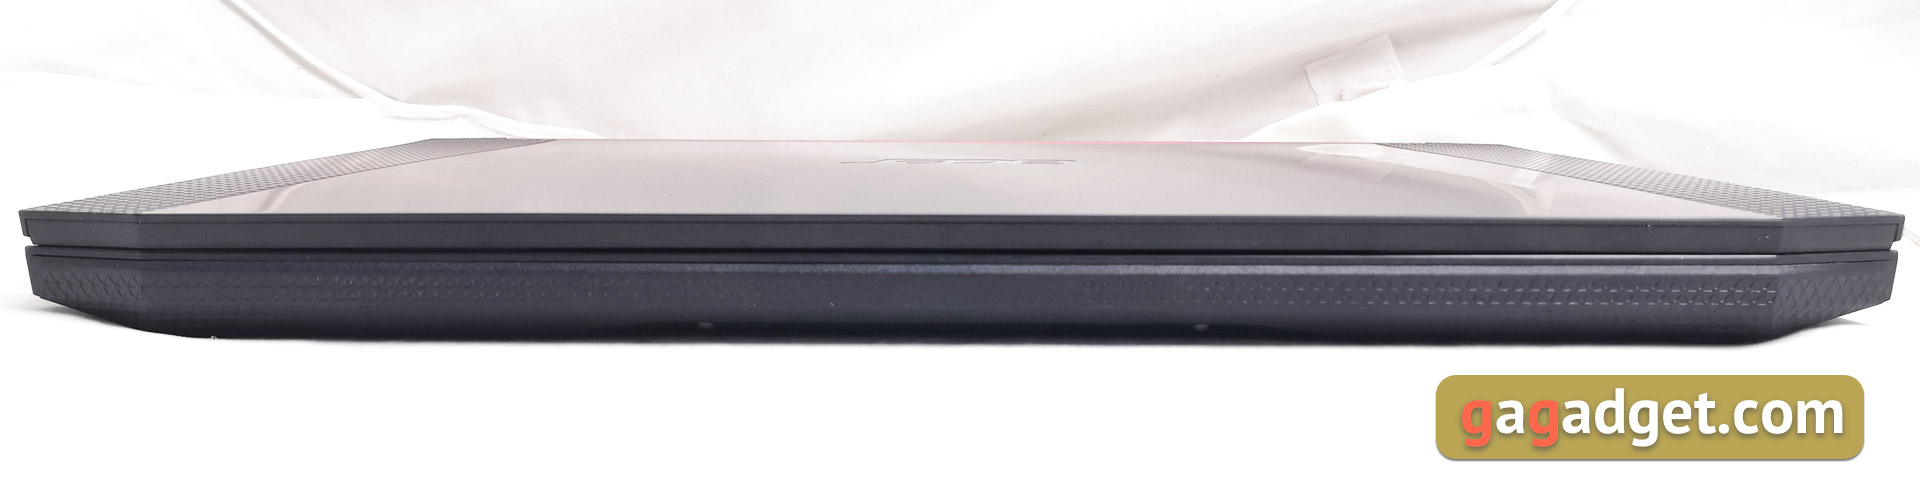 Recenzja laptopa do gier Acer Nitro 5 AN515-54: niedrogi i wydajny-8